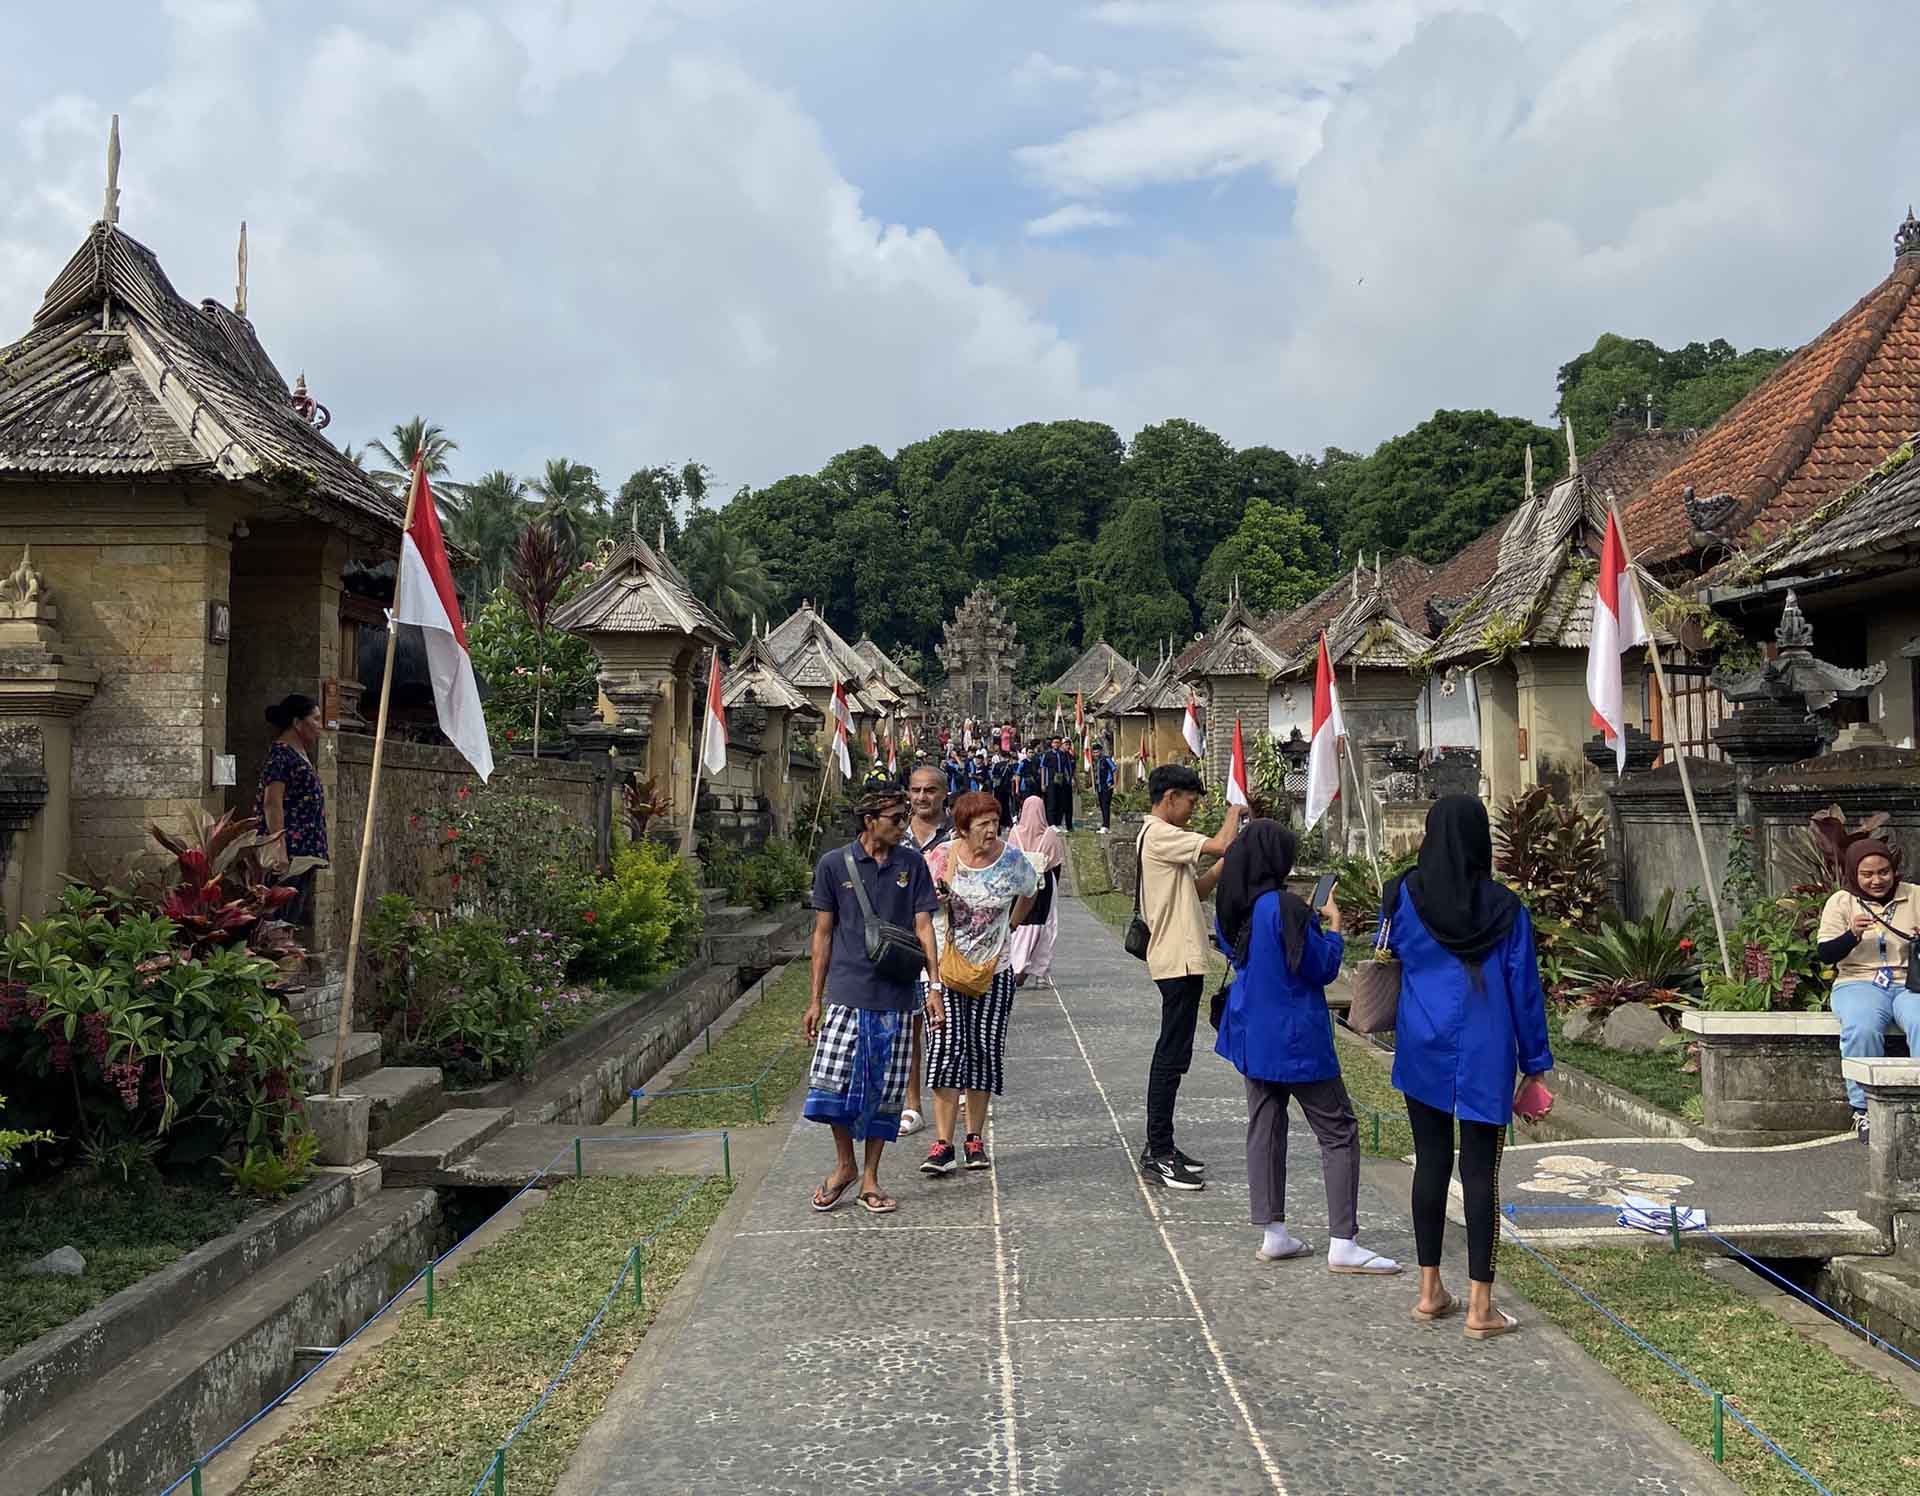 Penglipuran – ngôi làng lưu giữ kiến trúc truyền thống của người Bali